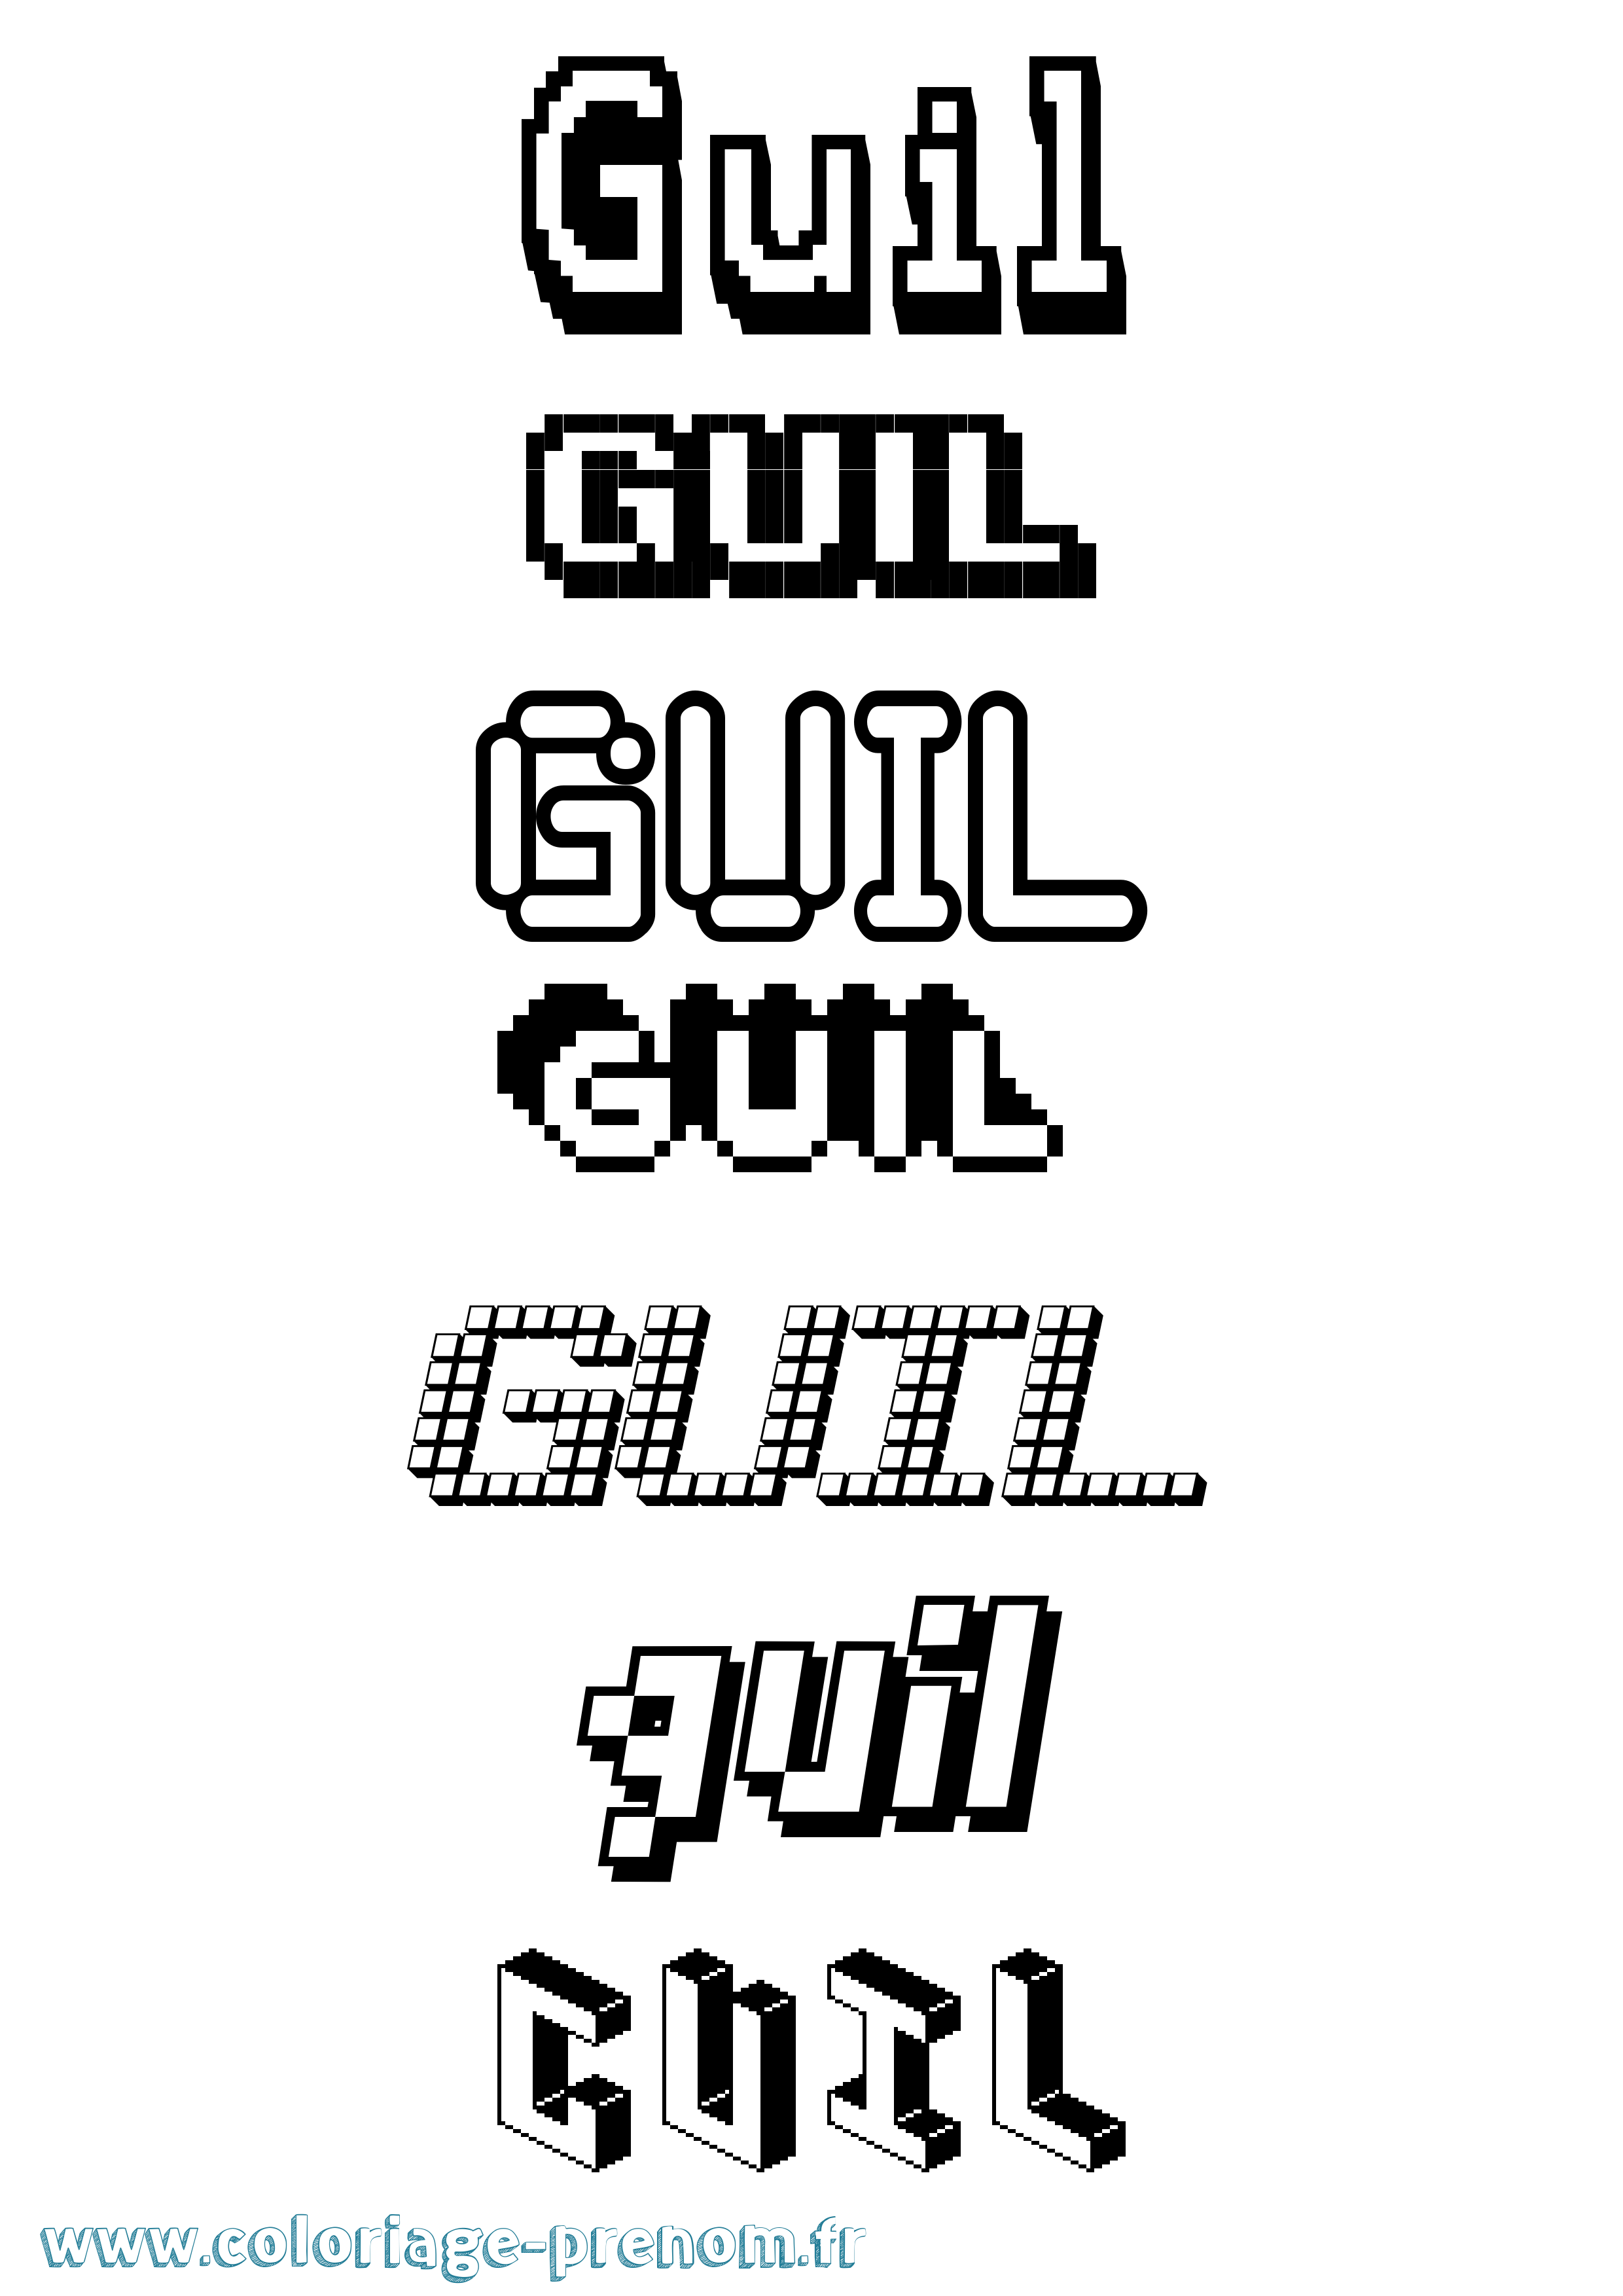 Coloriage prénom Guil Pixel